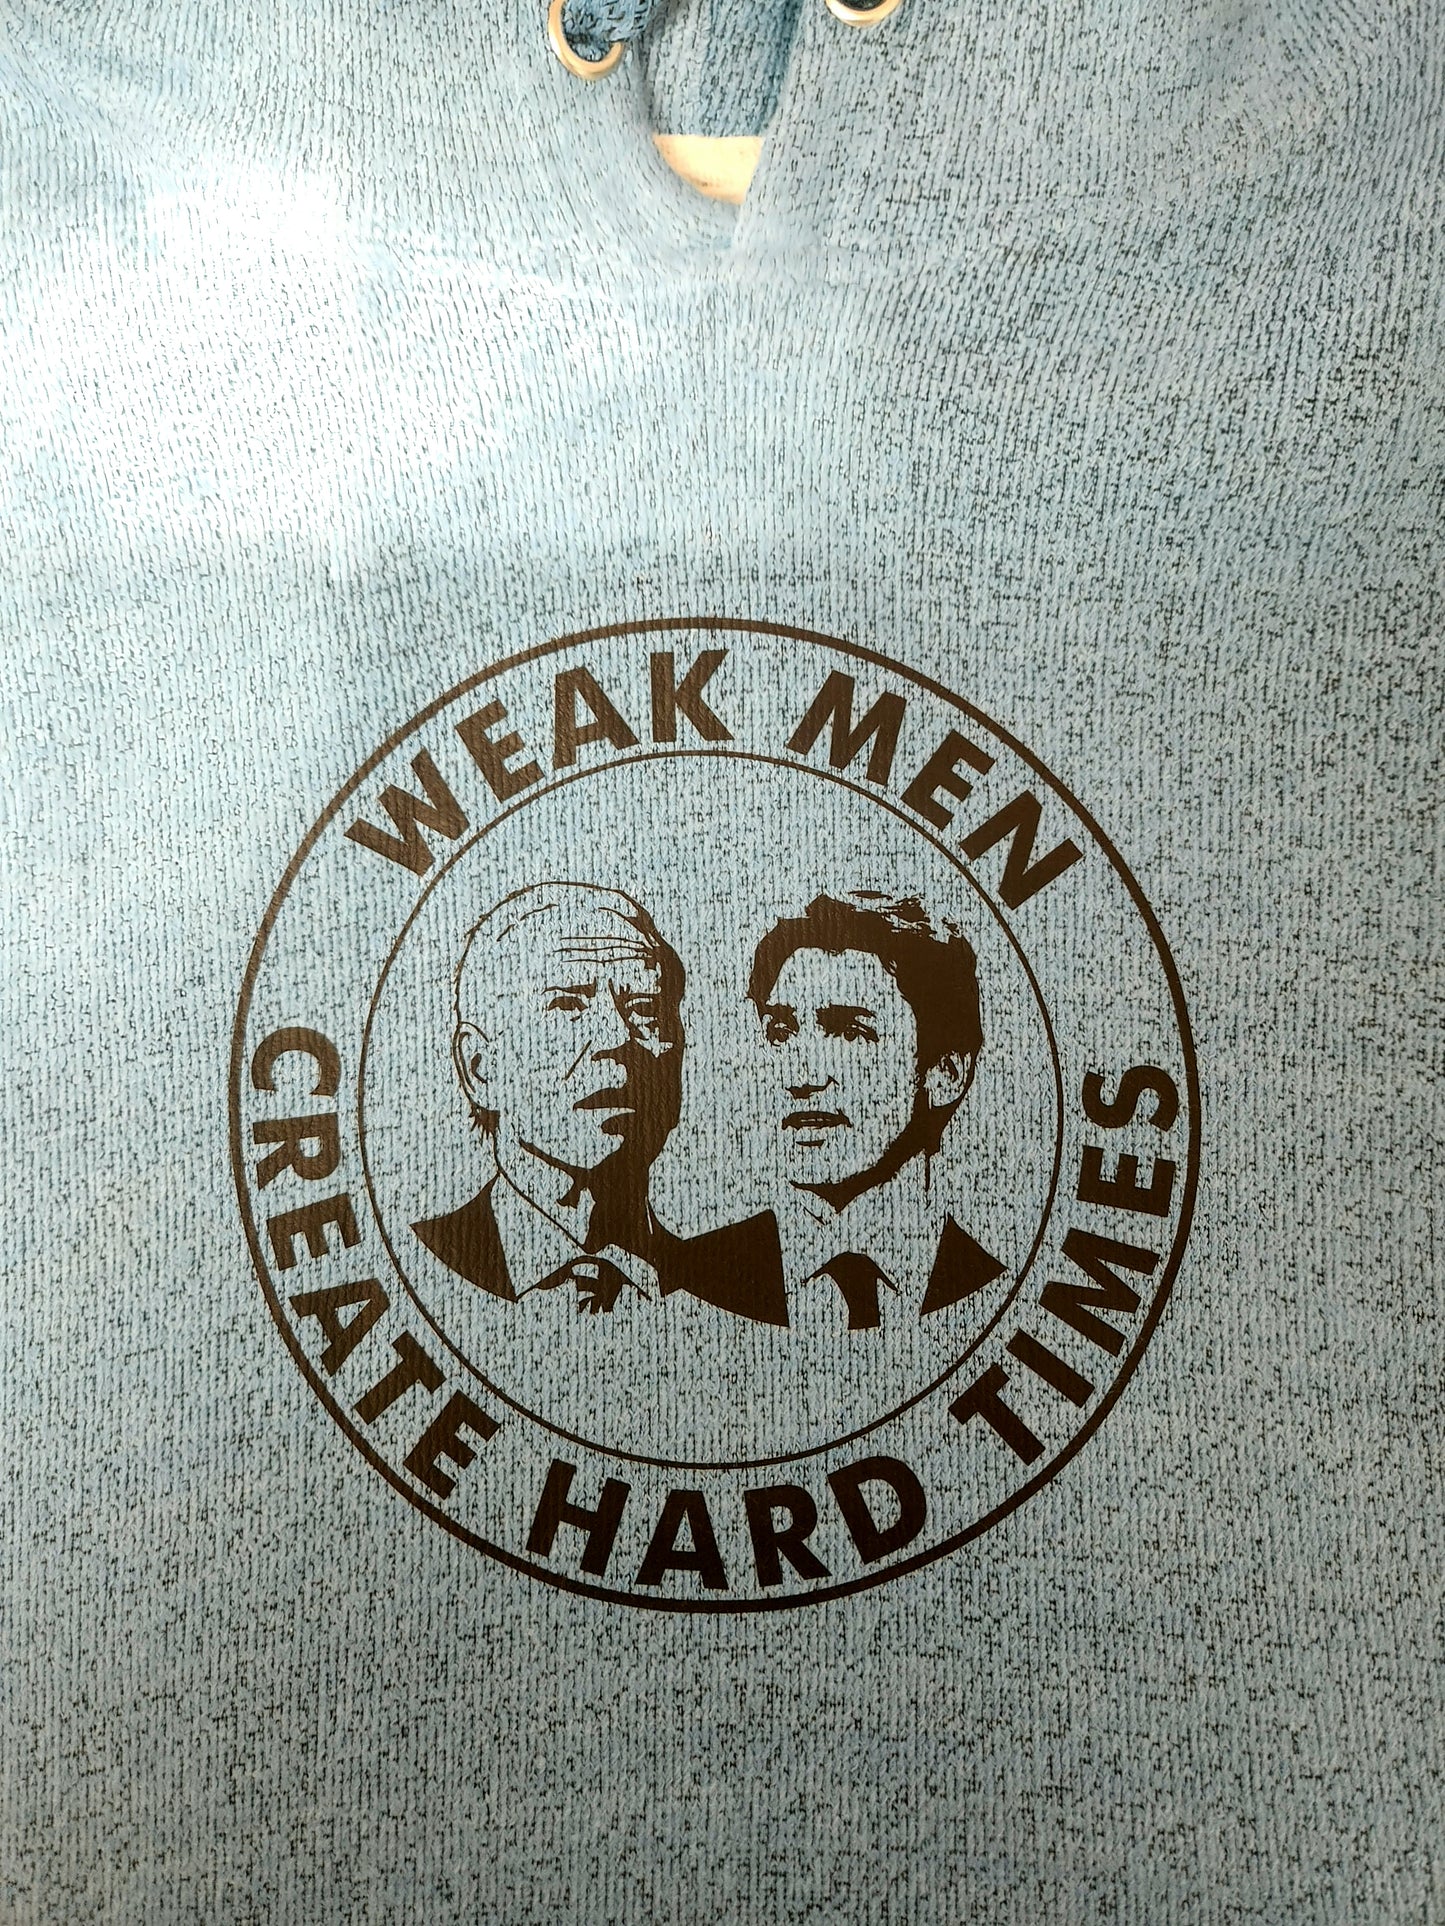 Weak Men Hoodie/T-Shirt (CUSTOM ORDER)